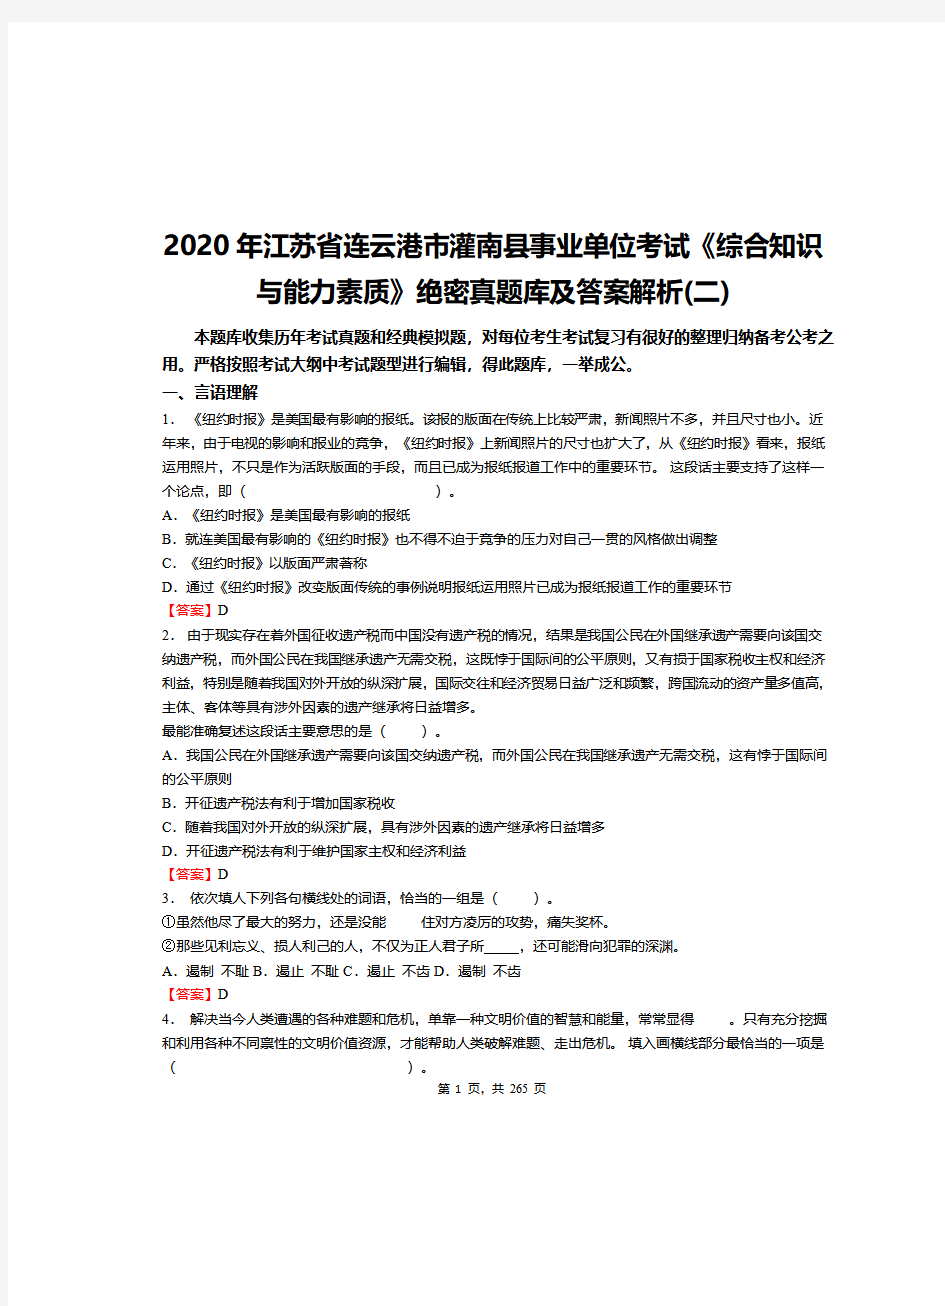 2020年江苏省连云港市灌南县事业单位考试《综合知识与能力素质》绝密真题库及答案解析(二)